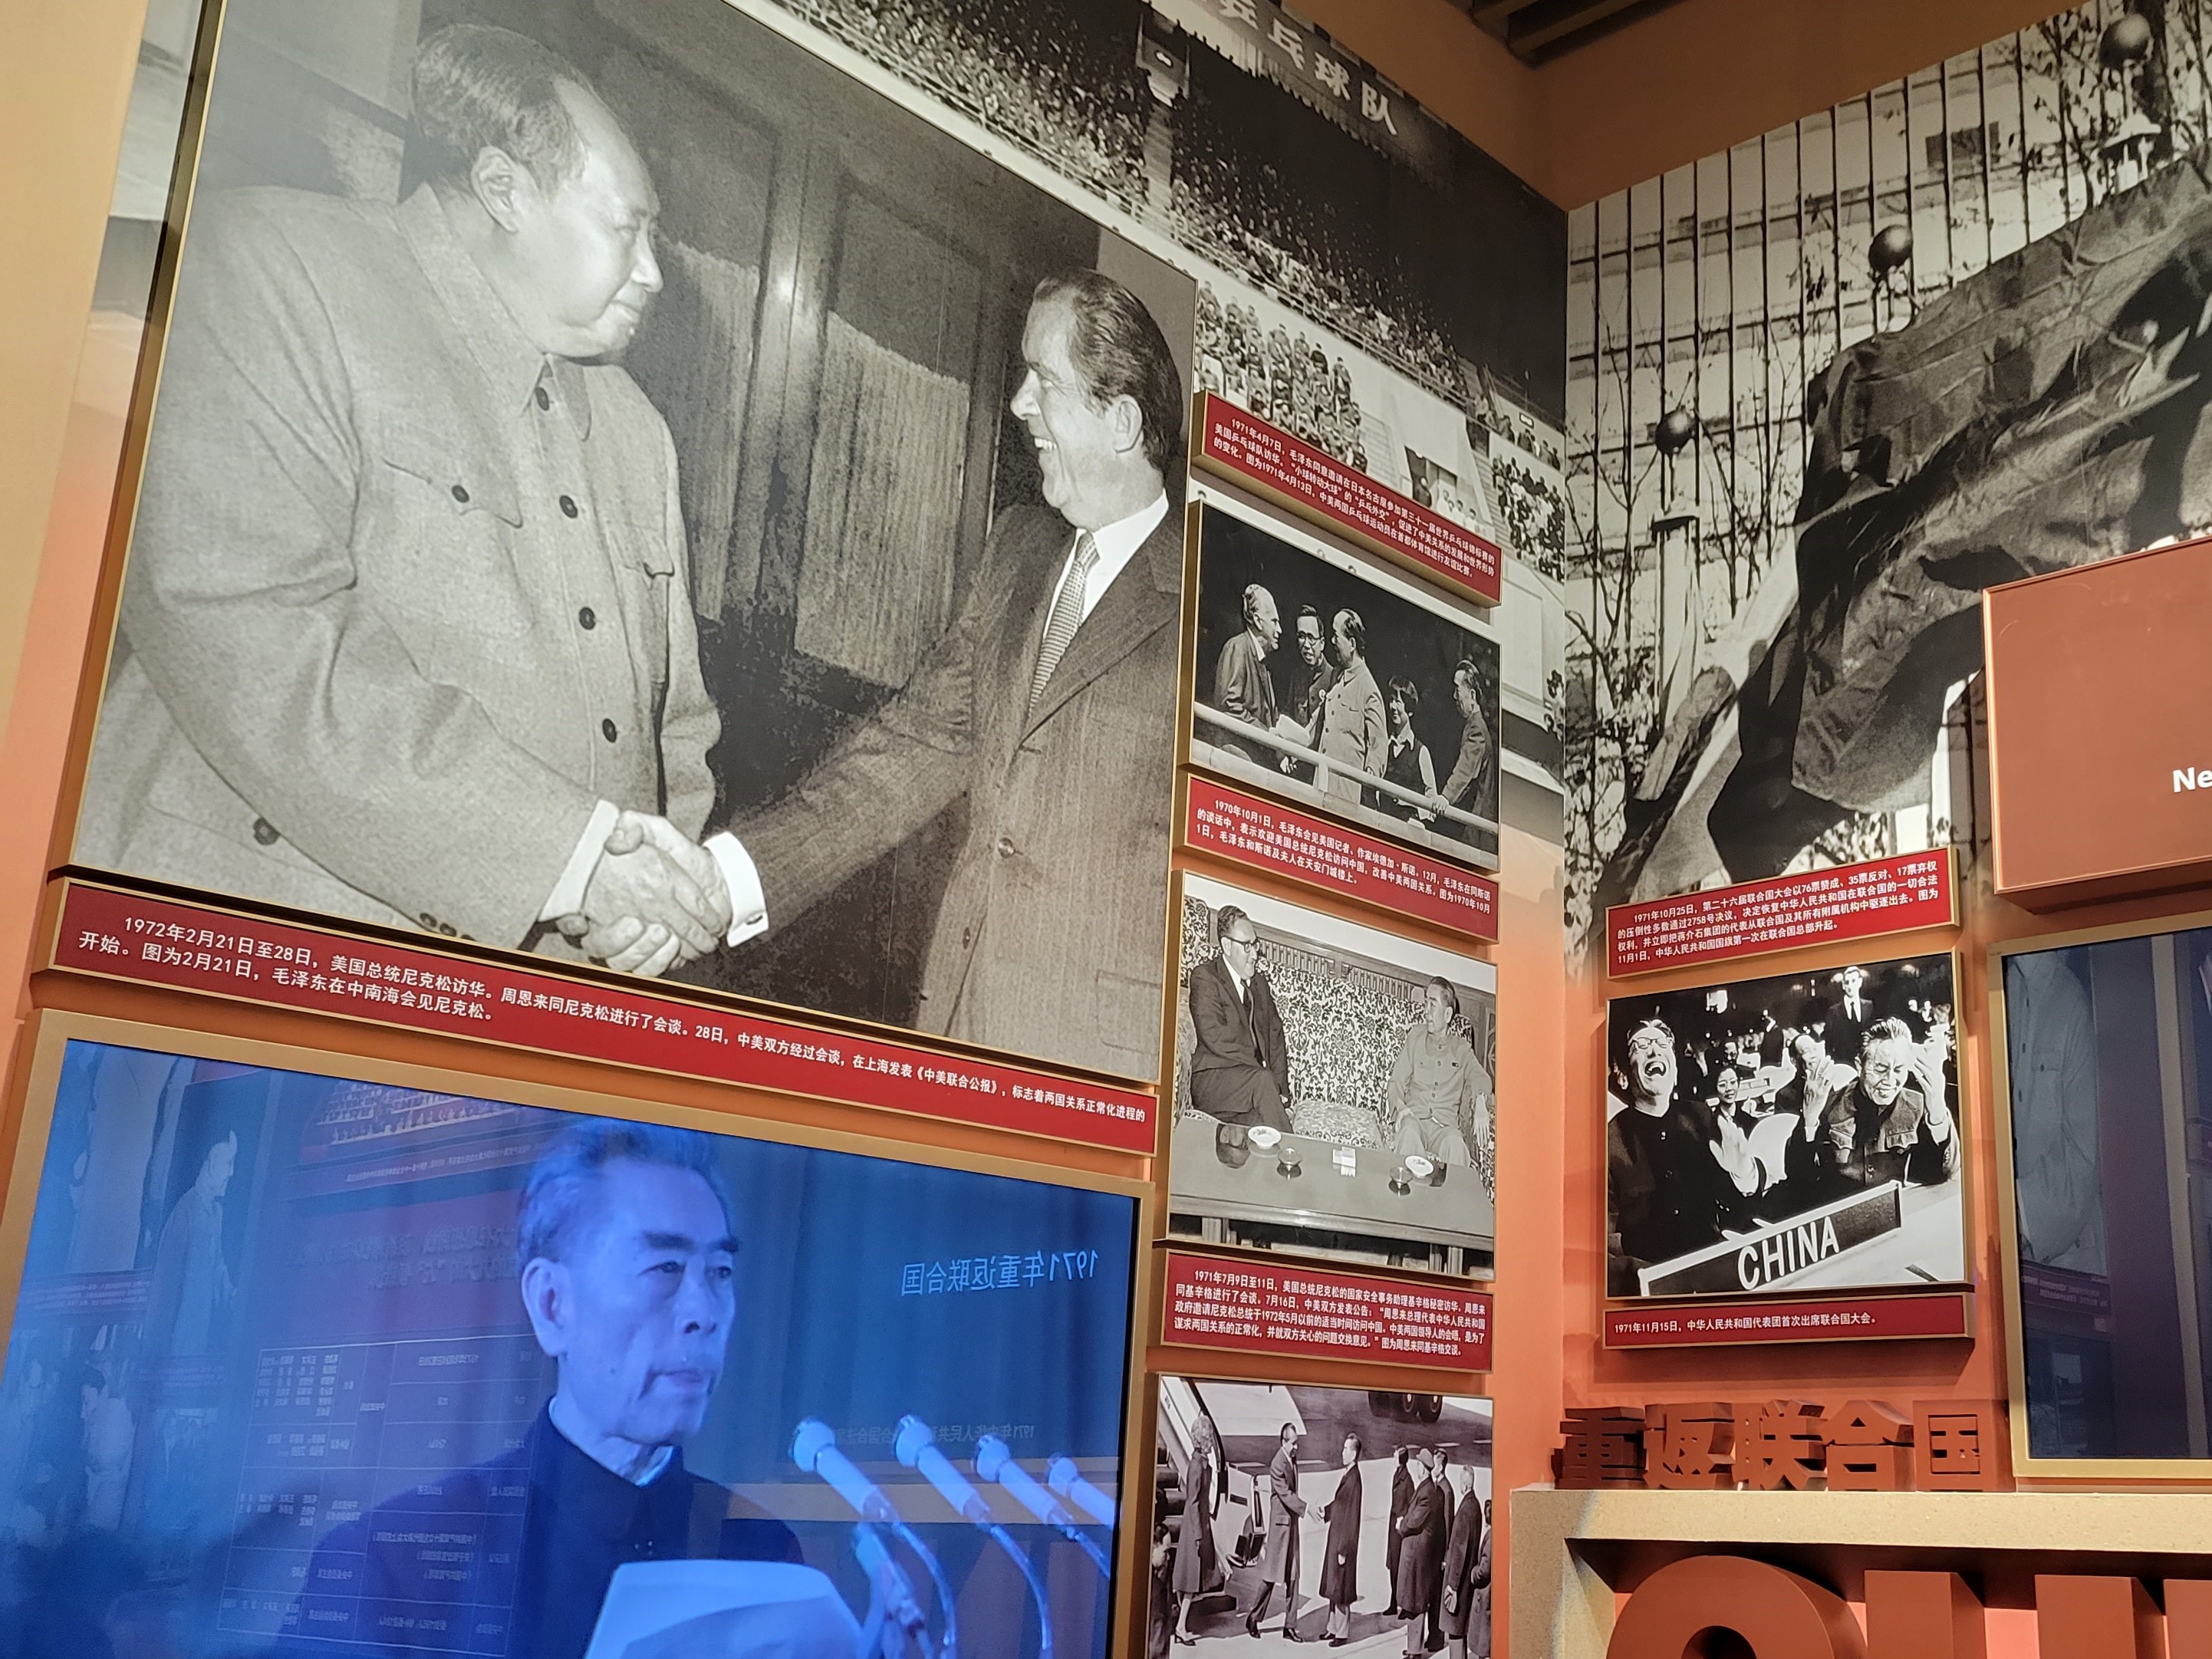 중국 공산당 100주년을 기념해 2021년 베이징에 문을 연 중국공산당역사박물관은 1972년 닉슨 방중과 1971년 중국의 유엔 진출 관련 사진들을 비중있게 전시하고 있다. (조성원 기자)